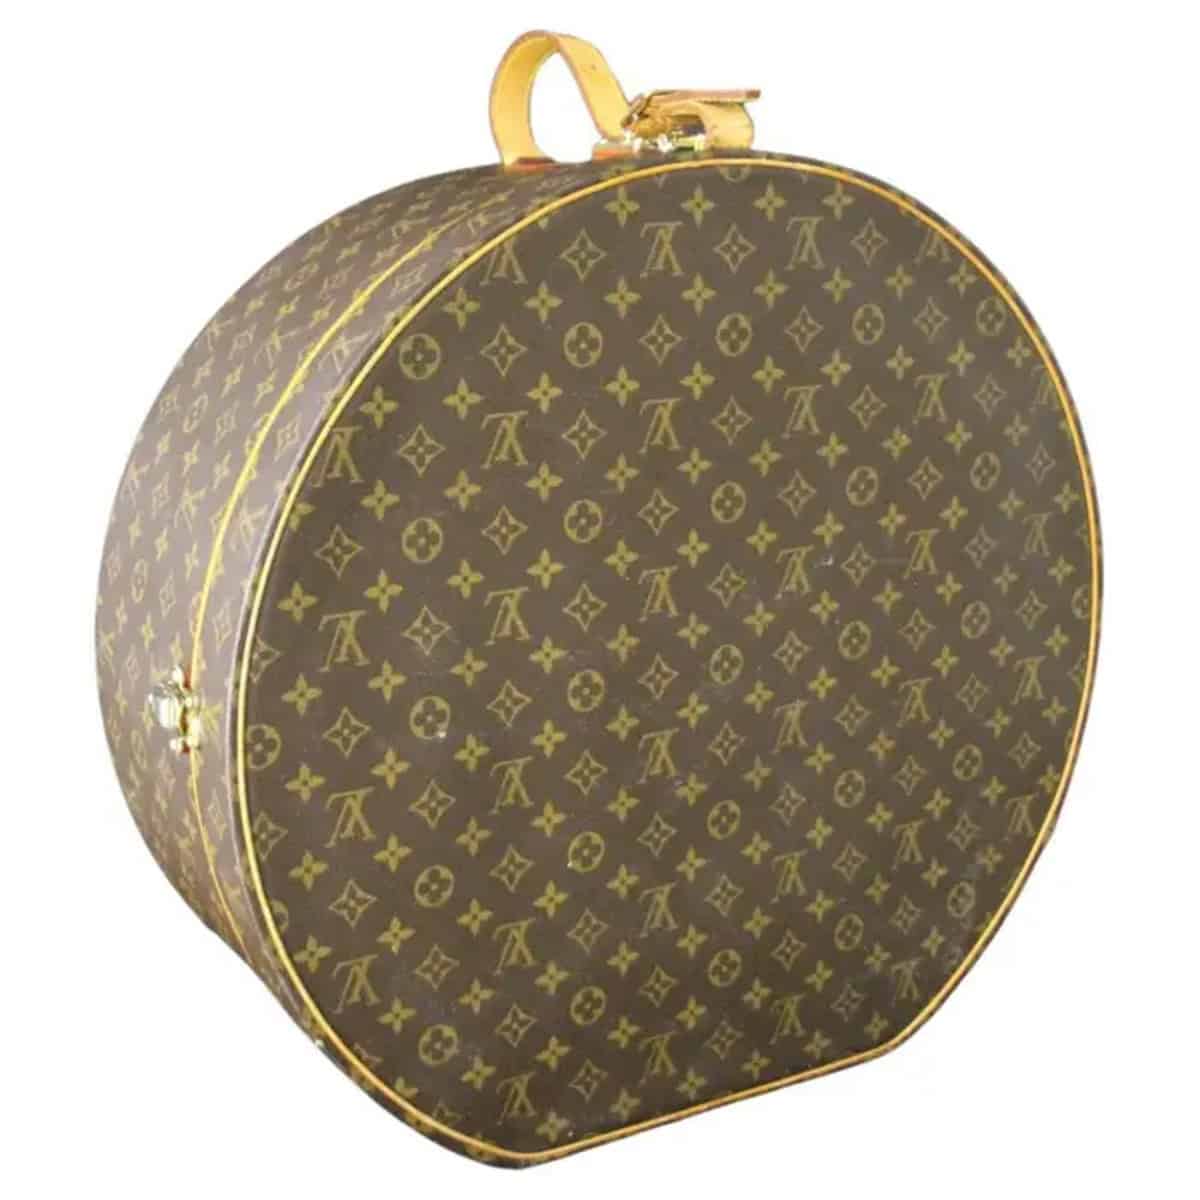 Louis Vuitton round hat box 50 cm, Vuitton round hat box 50 3